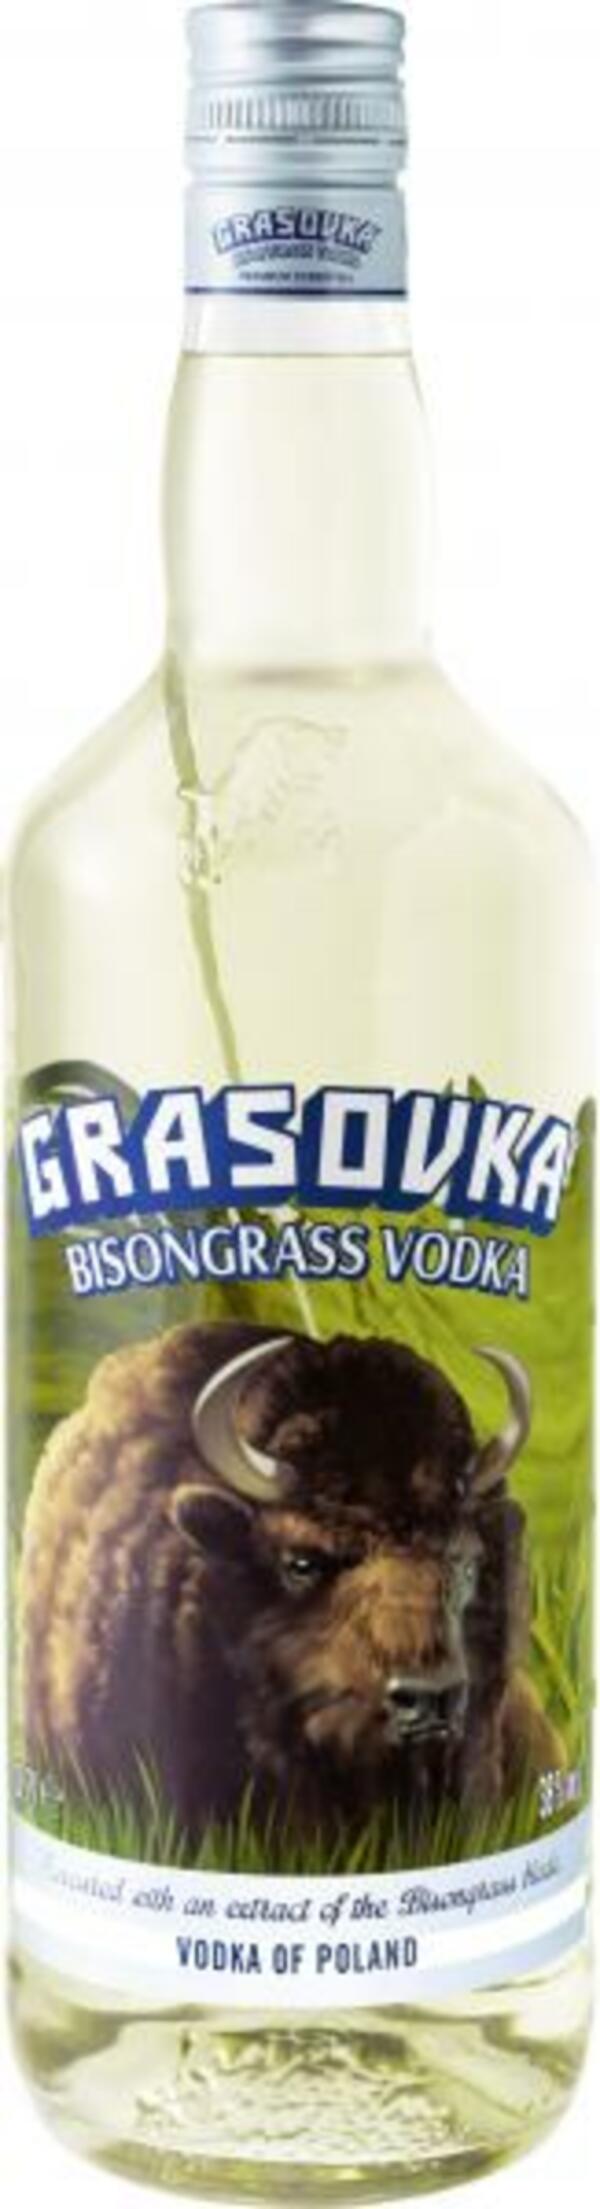 Bild 1 von Grasovka Bisongrass Vodka